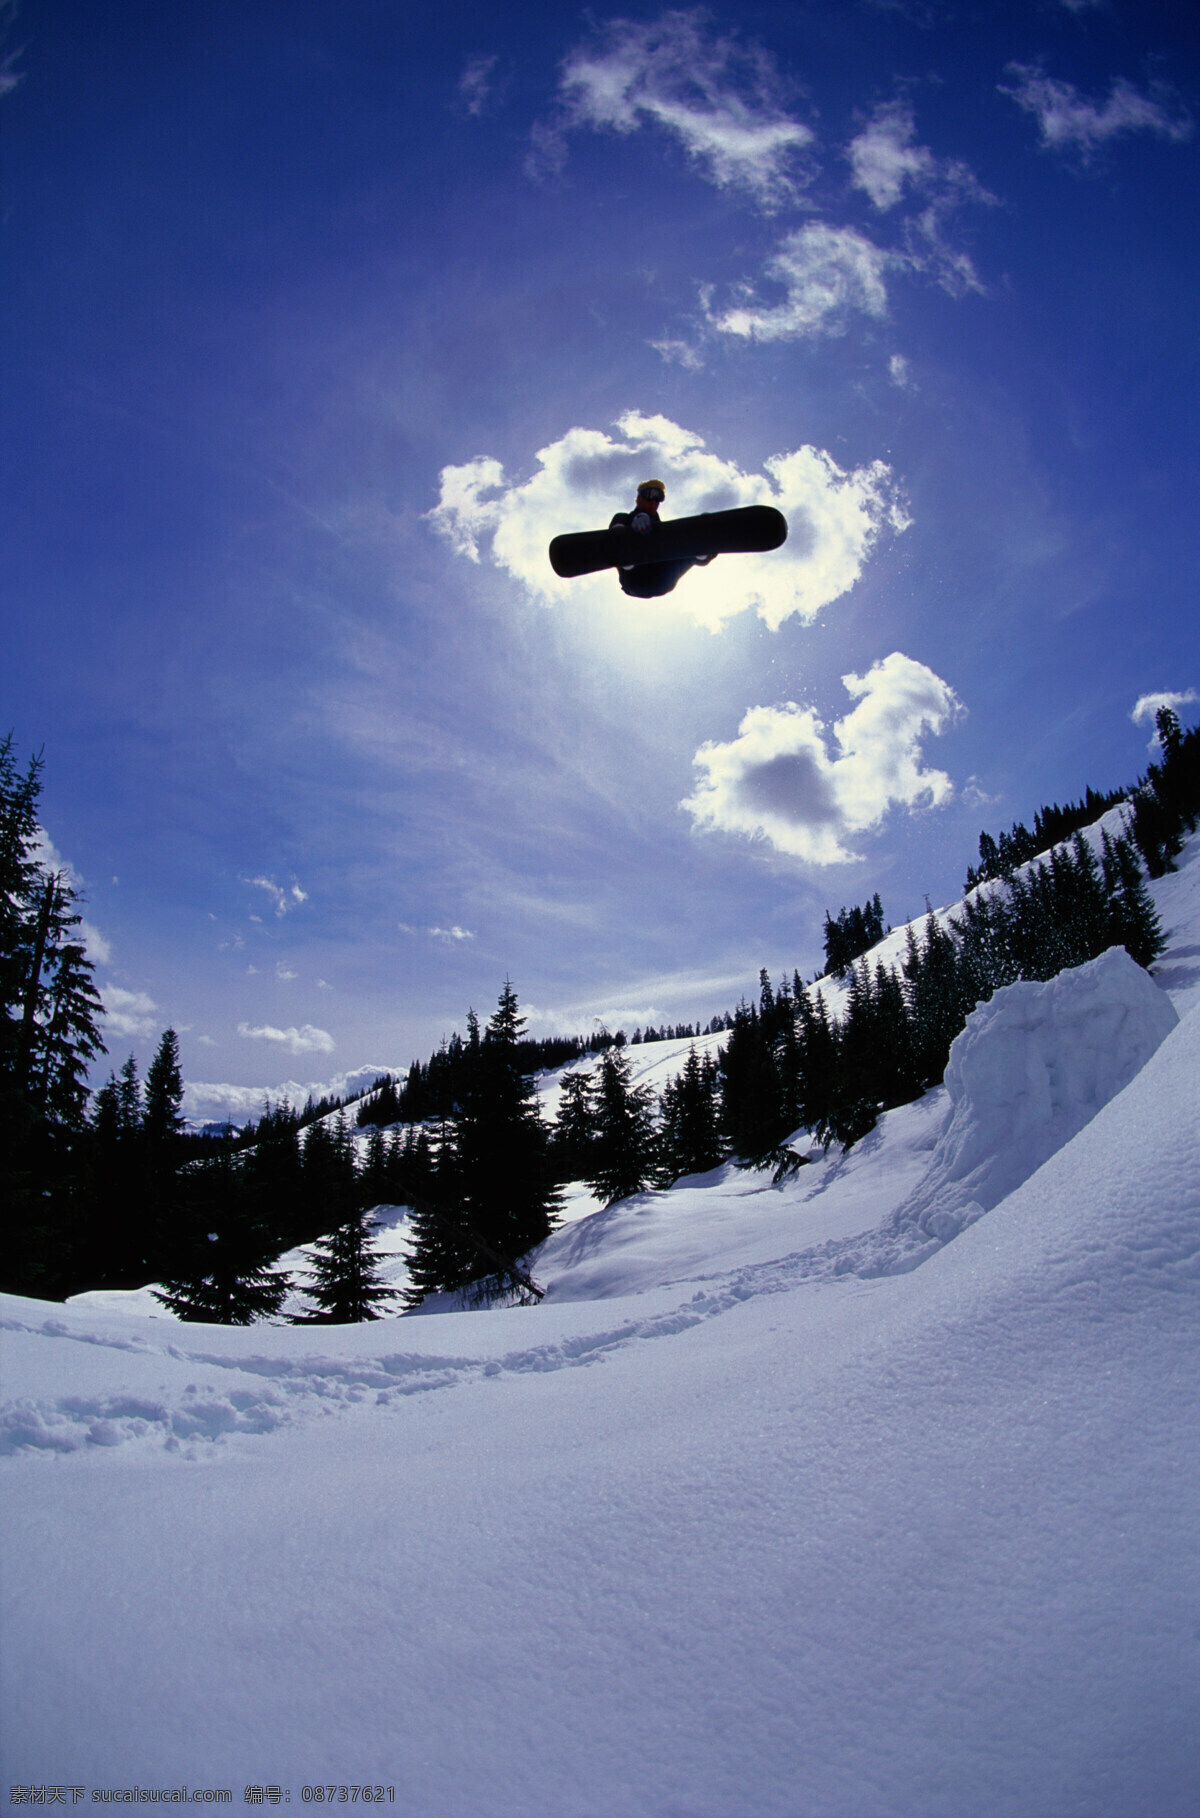 腾飞 起来 人 美丽 自然 雪地 冬季 运动 人物 滑雪 飞越 飞起 跳跃 腾空 雪花 极限运动 体育运动 生活百科